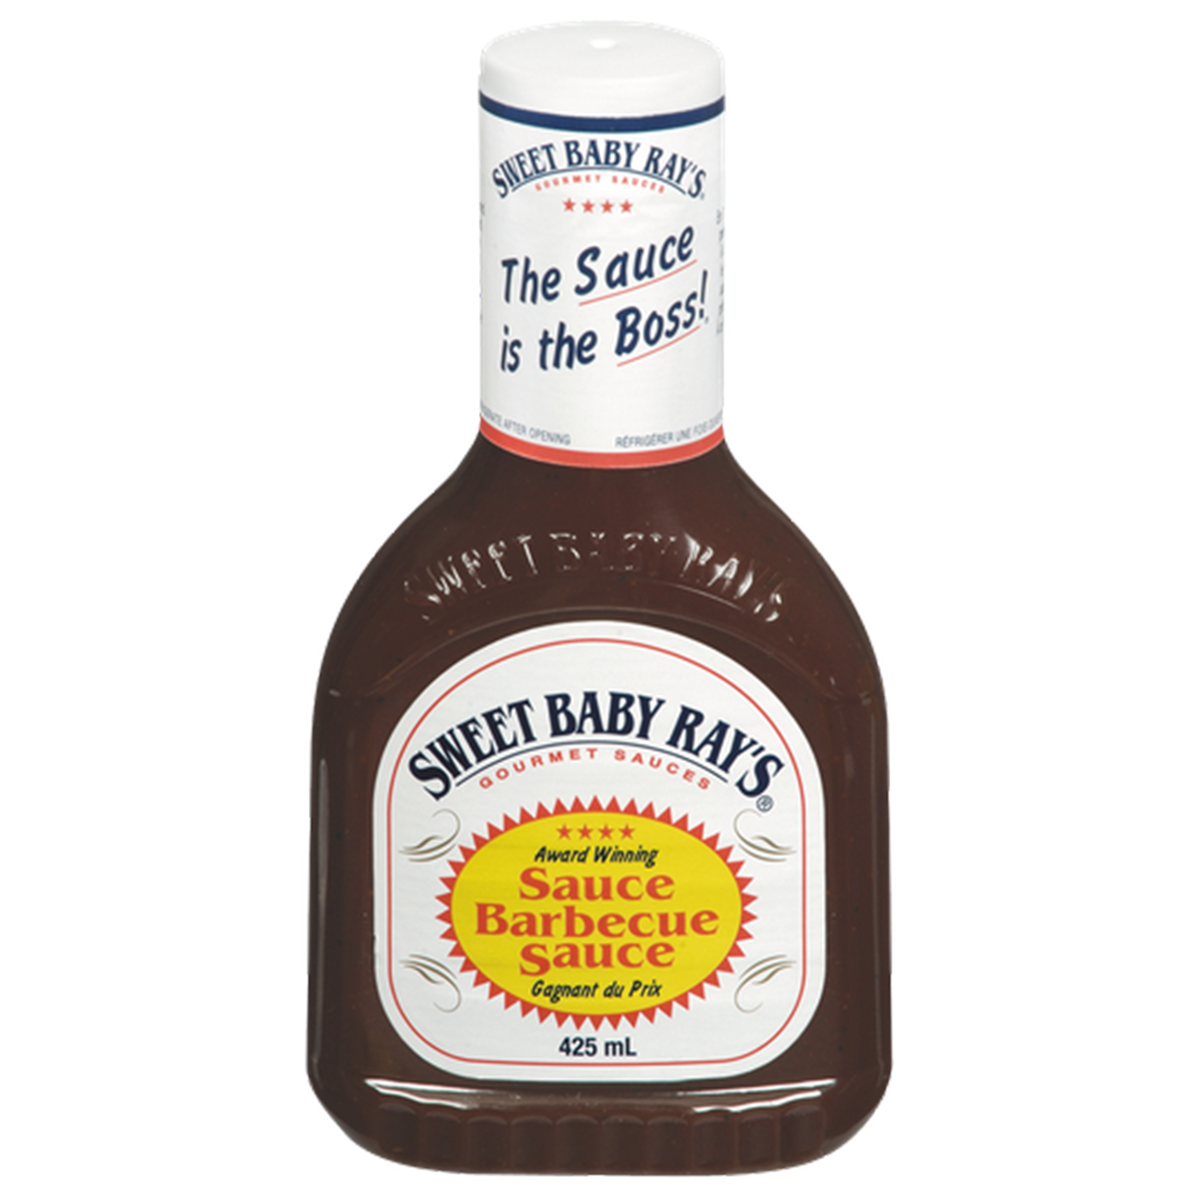 Sweet Baby Ray's Original BBQ Sauce, 425ml